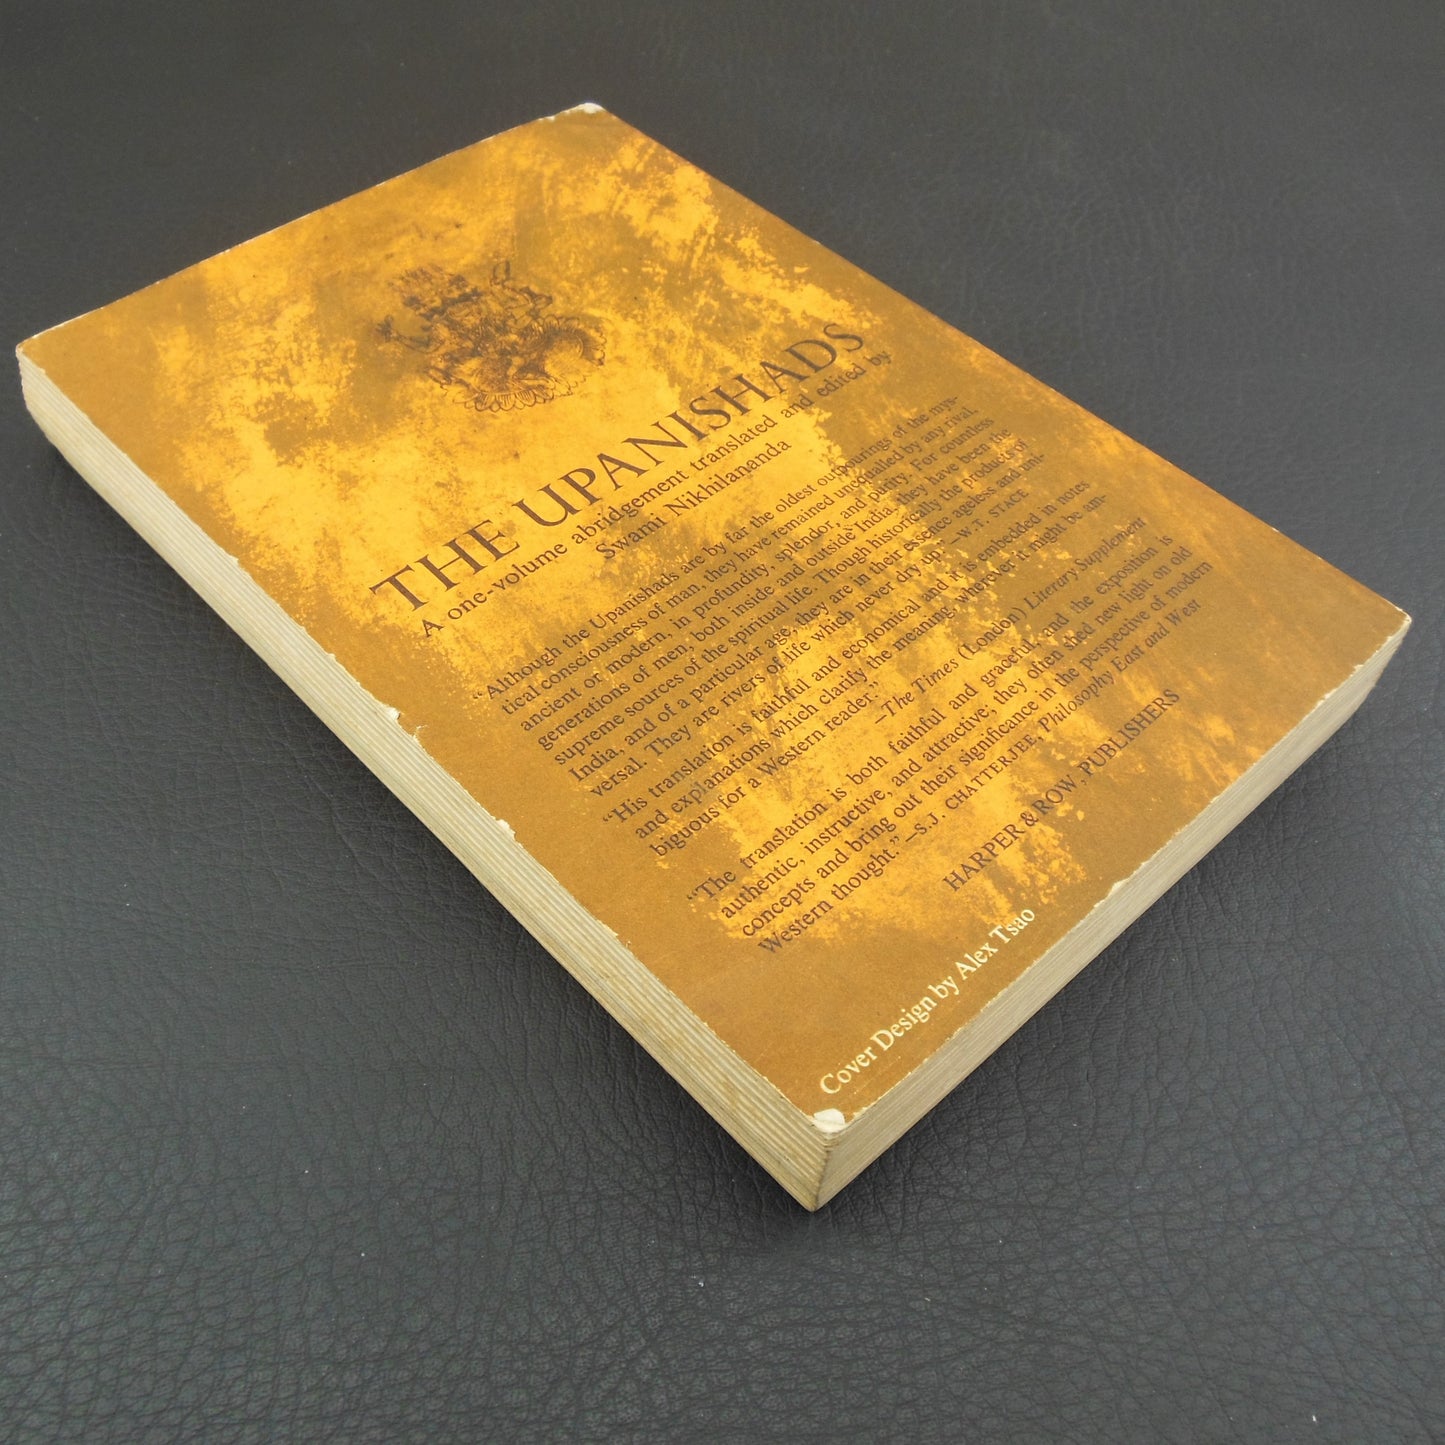 Swami Nikhilananda Signed Book - The Upanishads 1964 vintage